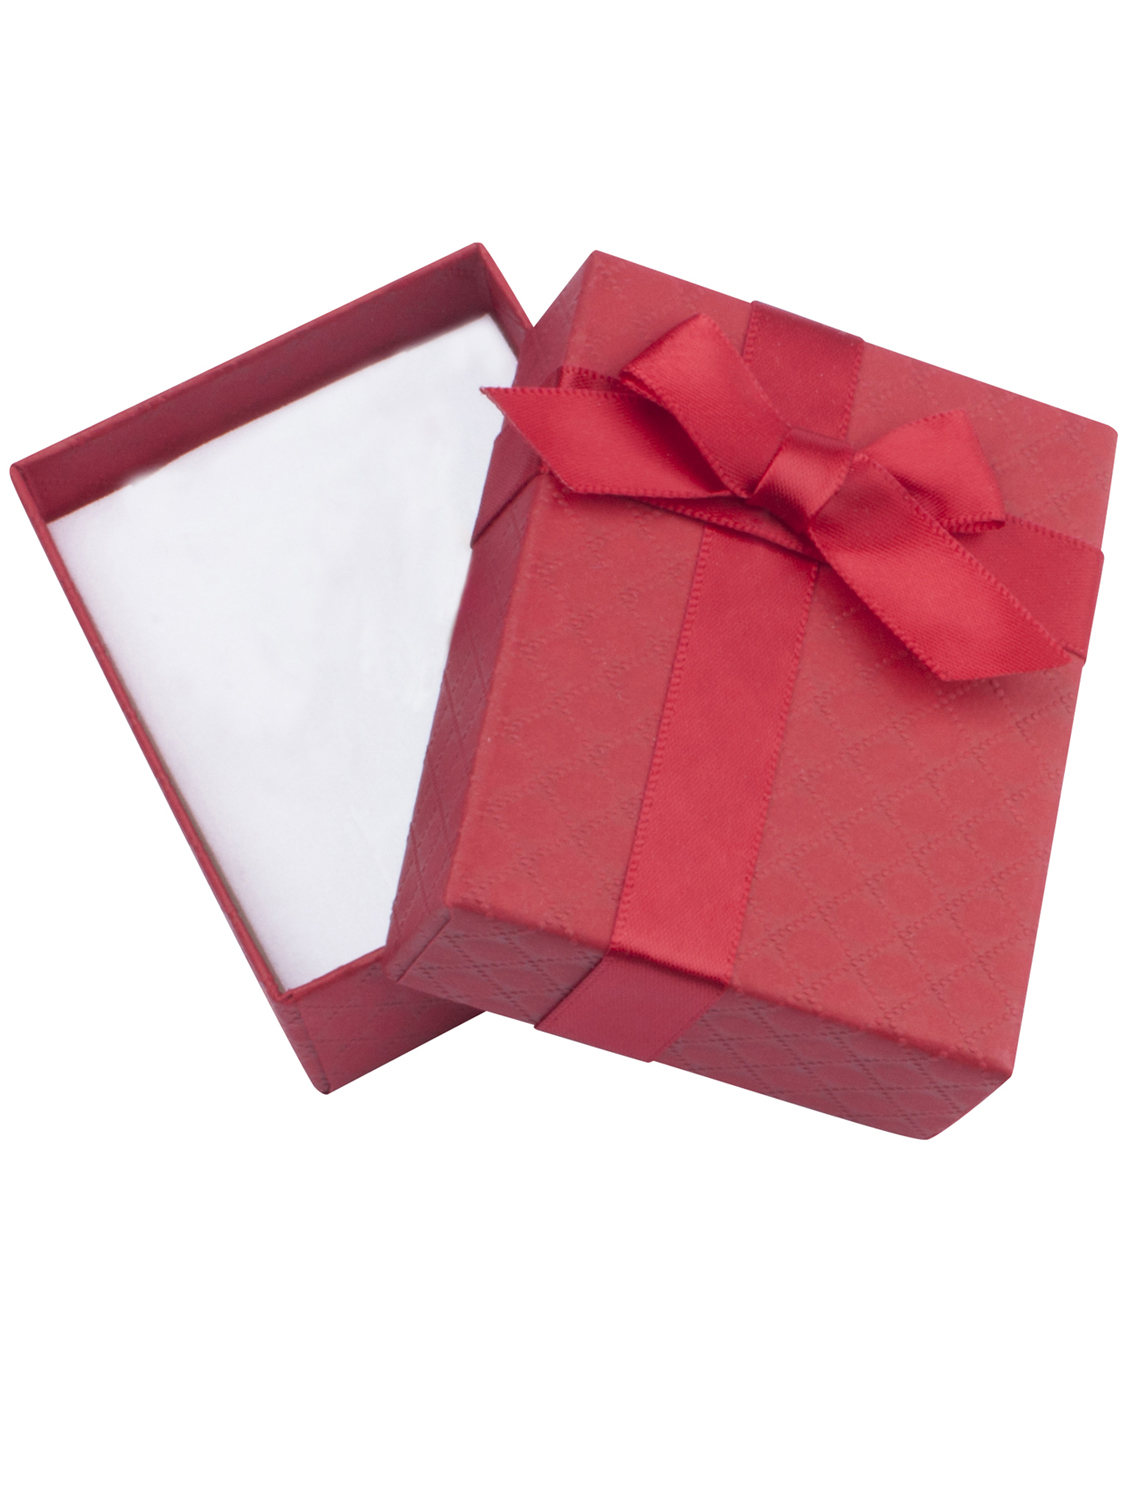 Rote Geschenkschachtel mit schöner Satinschleife und Echtheitszertifikat | Verpackung